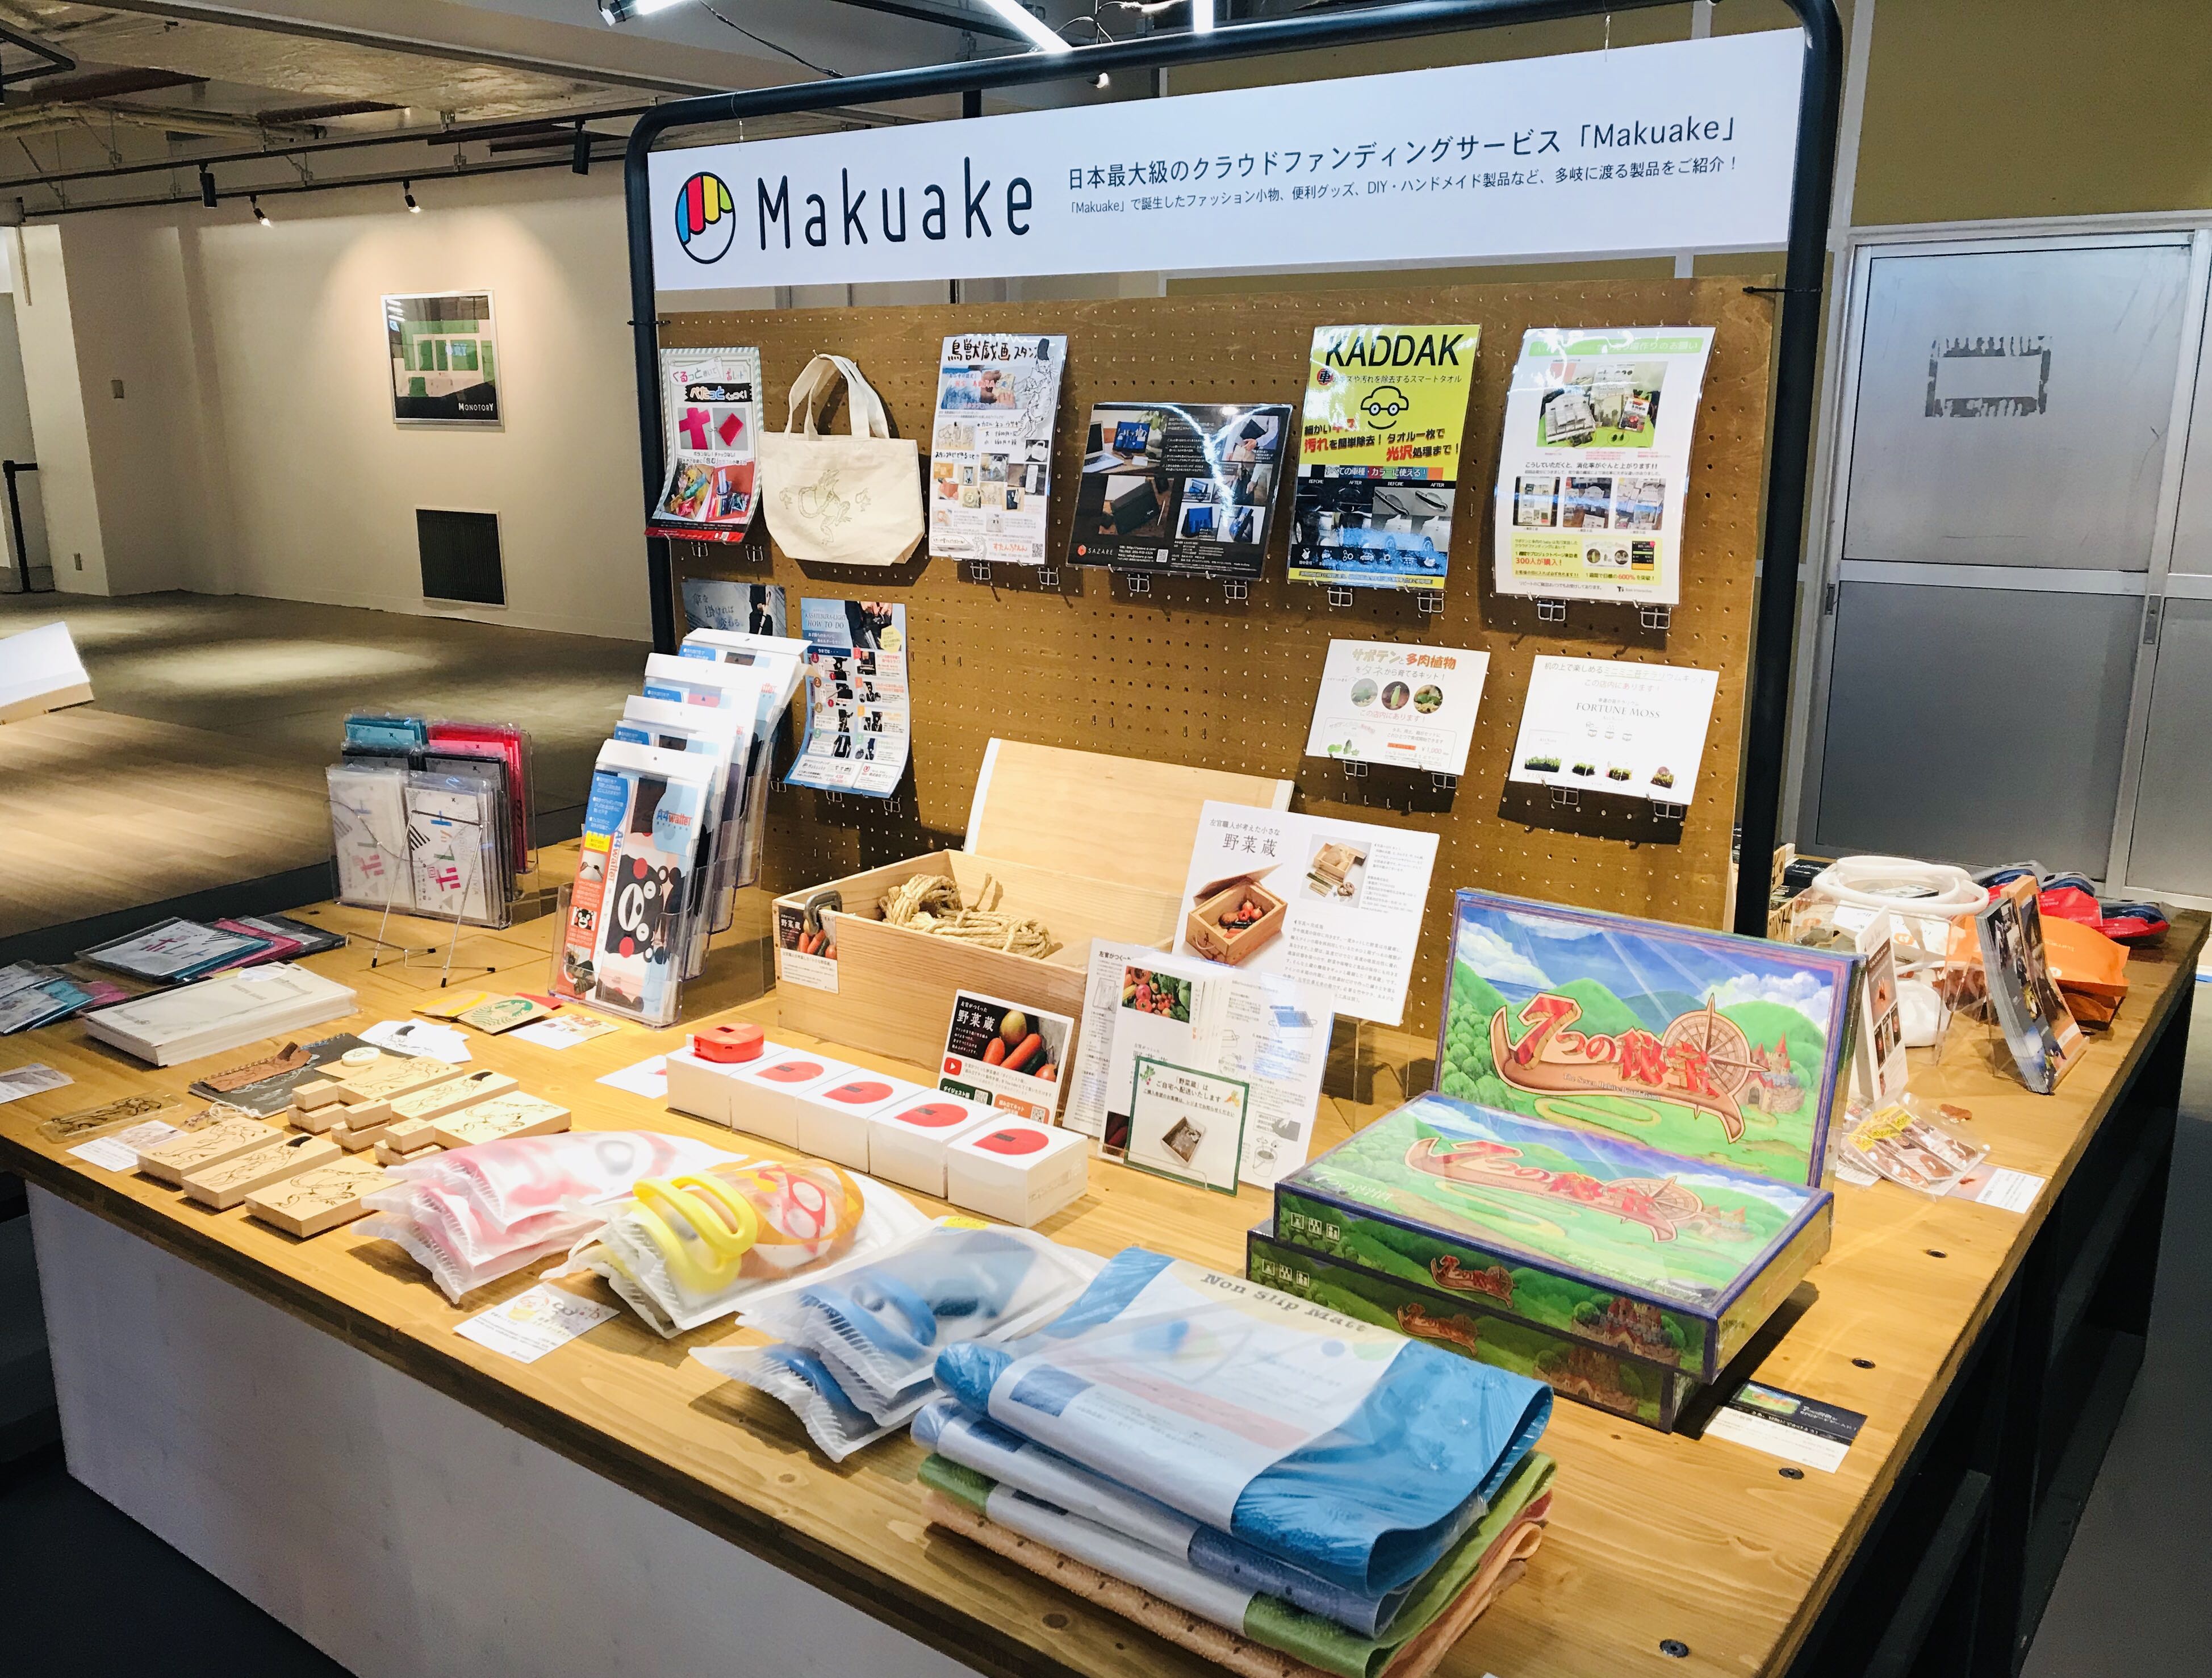 横浜「アソビル」様にて、制作したボードゲームが展示されました。